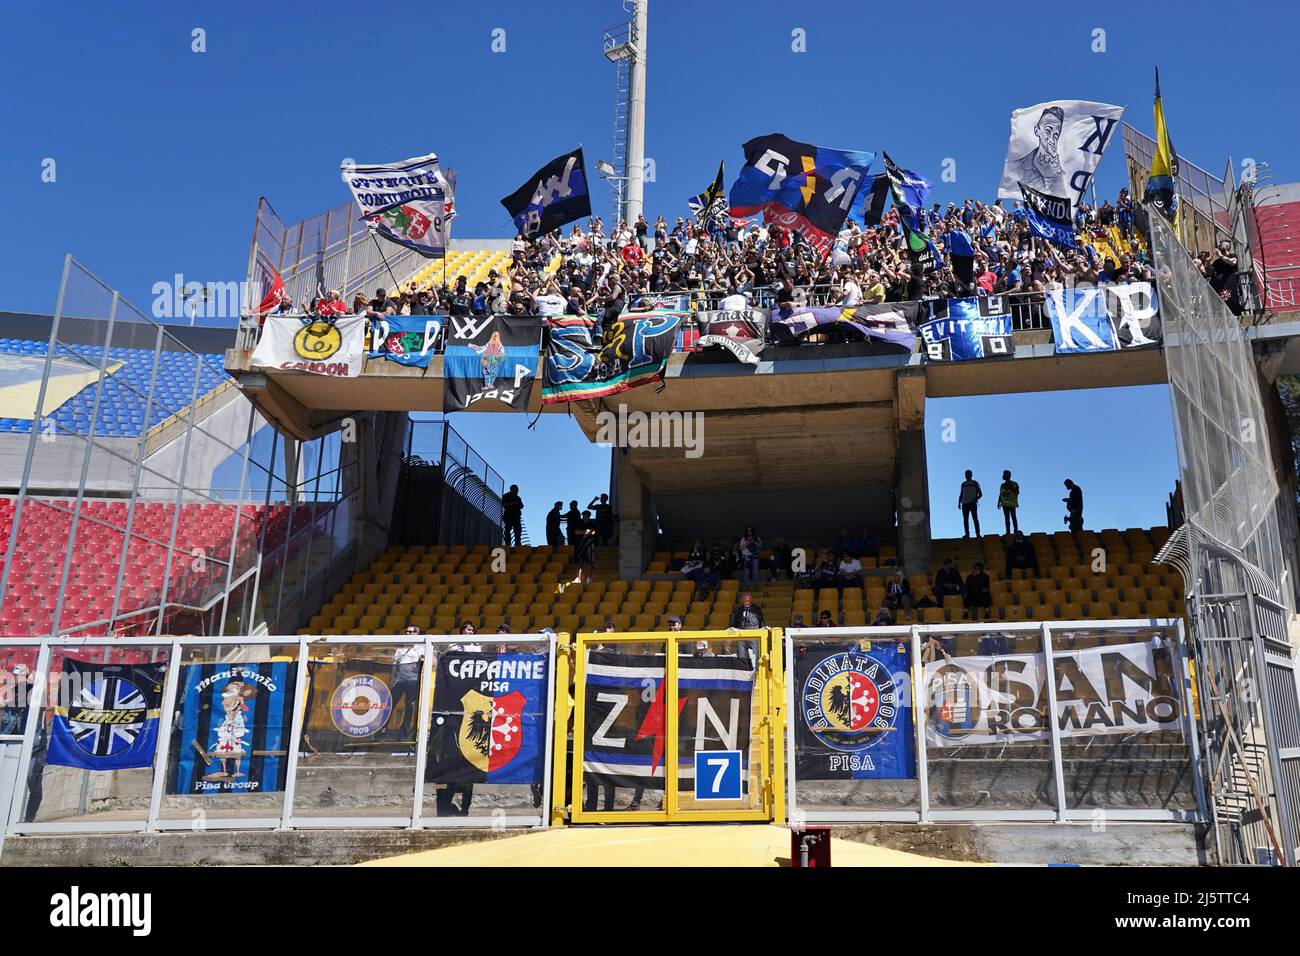 ESTADIO US Lecce durante el partido de fútbol italiano Serie B US Lecce vs  AC Pisa el 25 de abril de 2022 en el Stadio Via del Mare en Lecce, Italia  (Foto